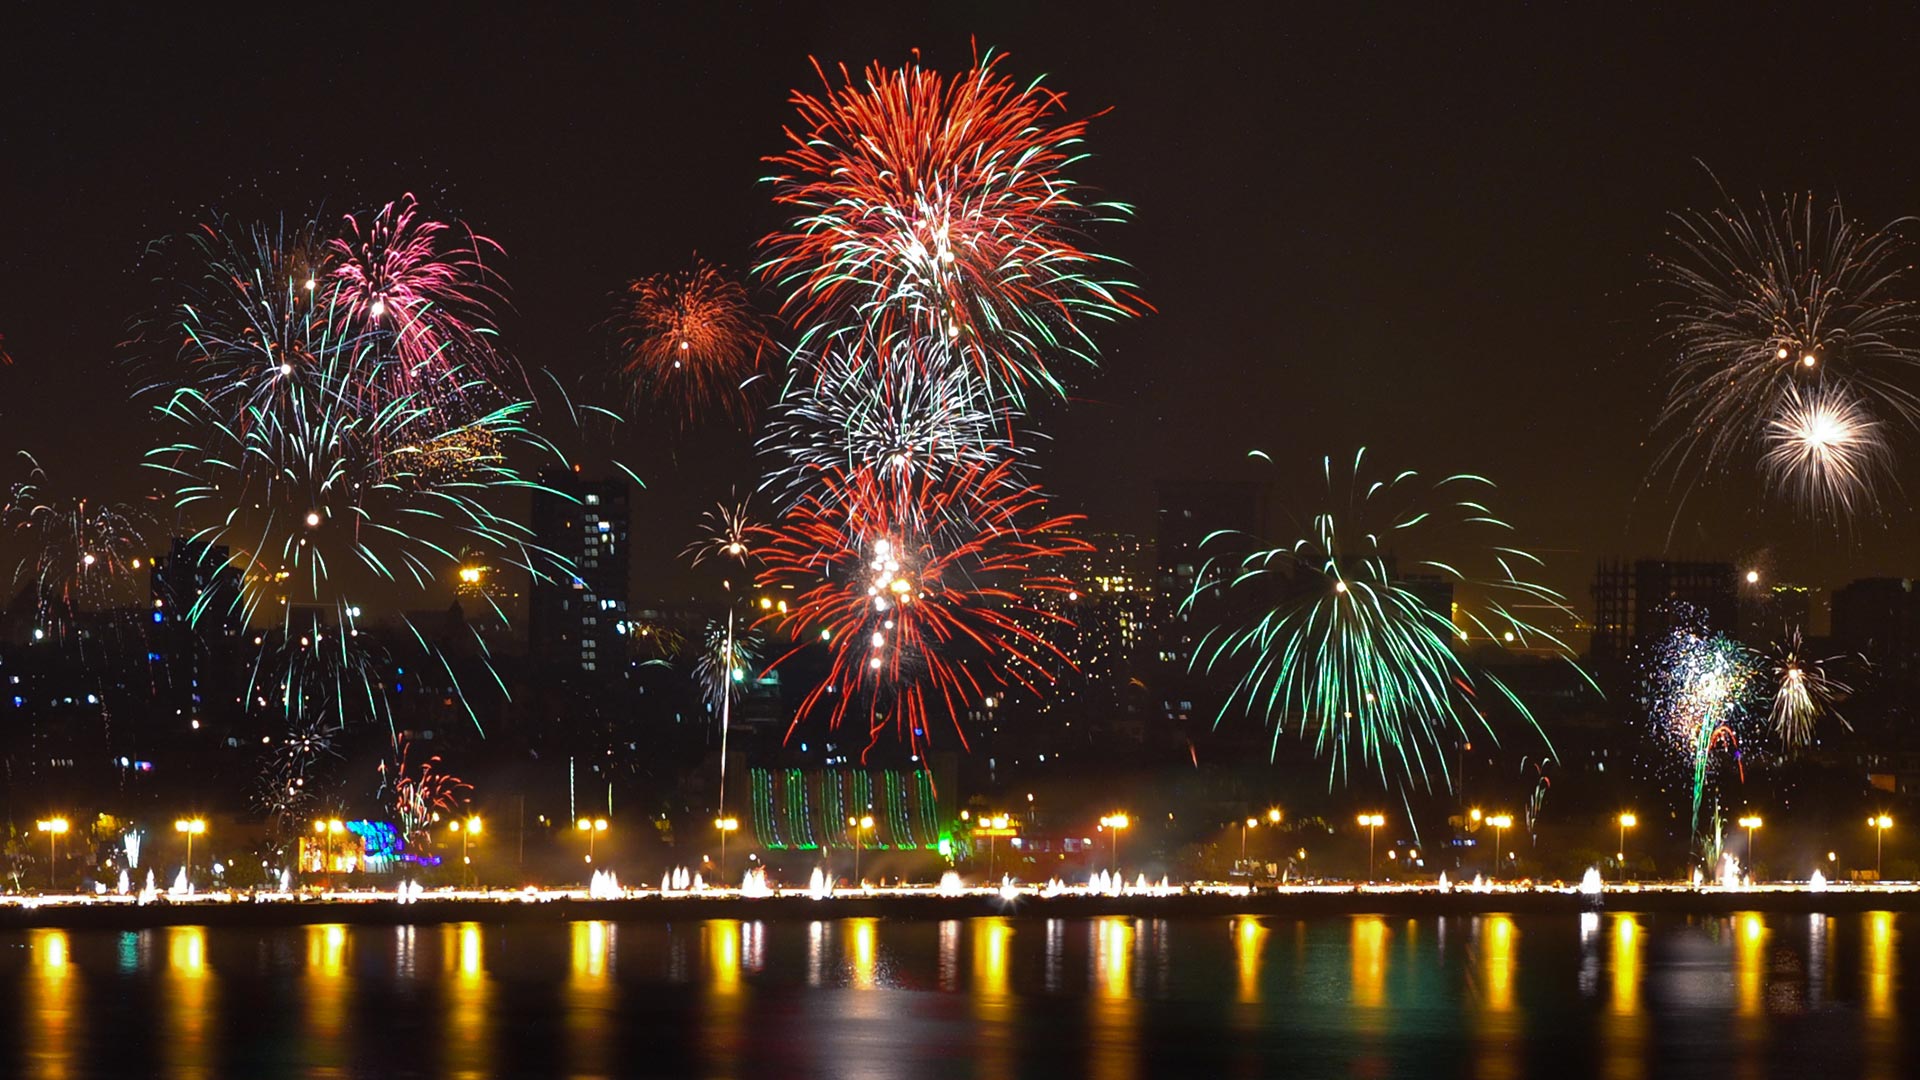 diwali fireworks in sky in mumbai